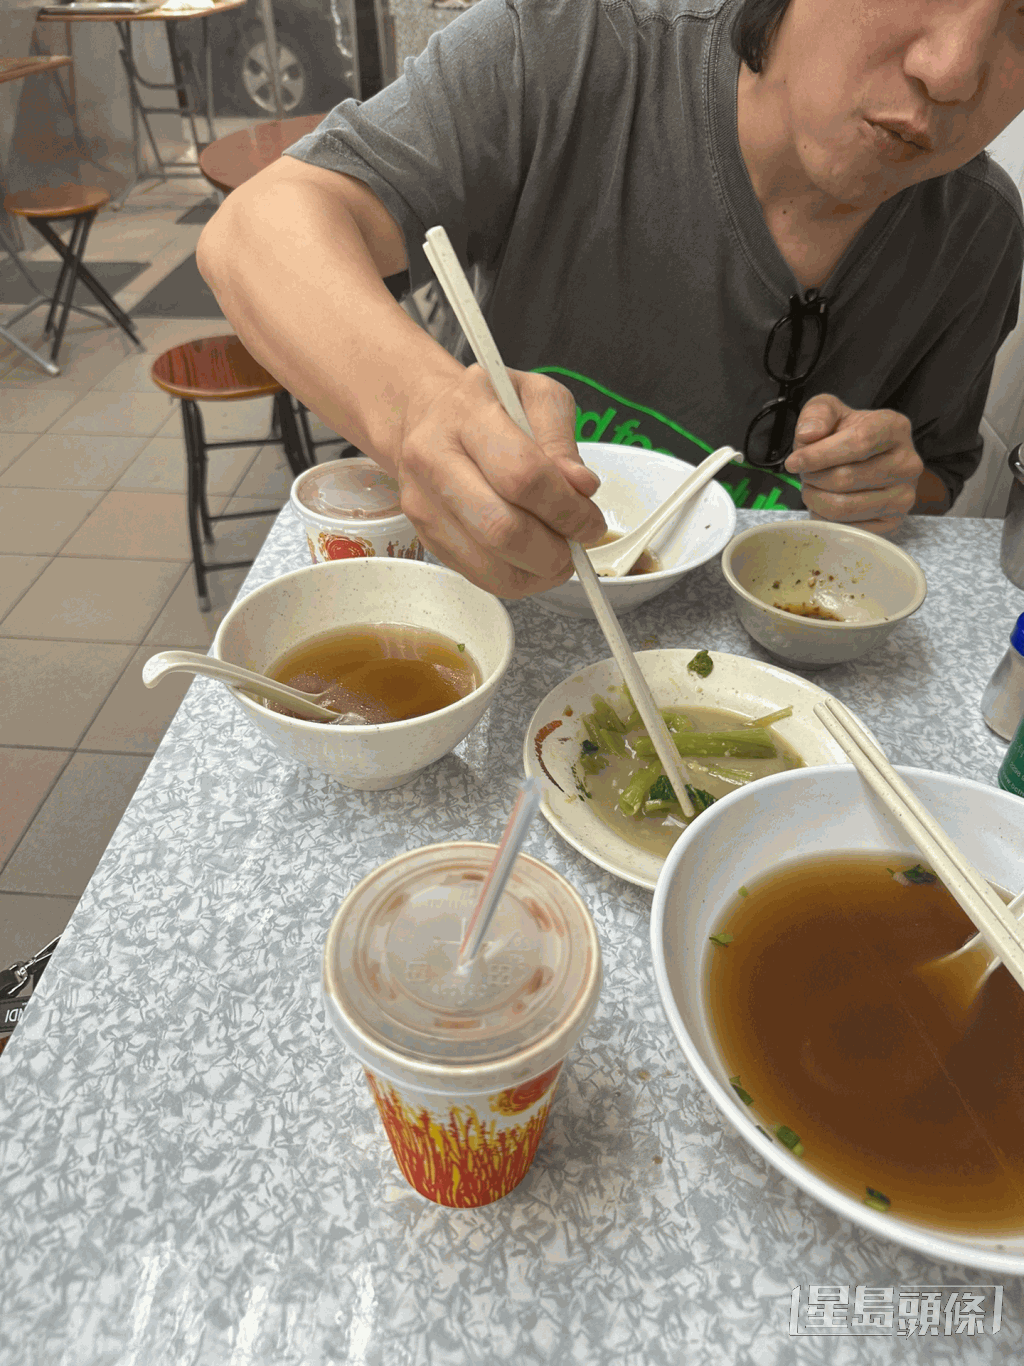 在陳奕迅與一名女子在大坑食飯後不久，徐濠縈便上載與陳奕迅食麵的照片。